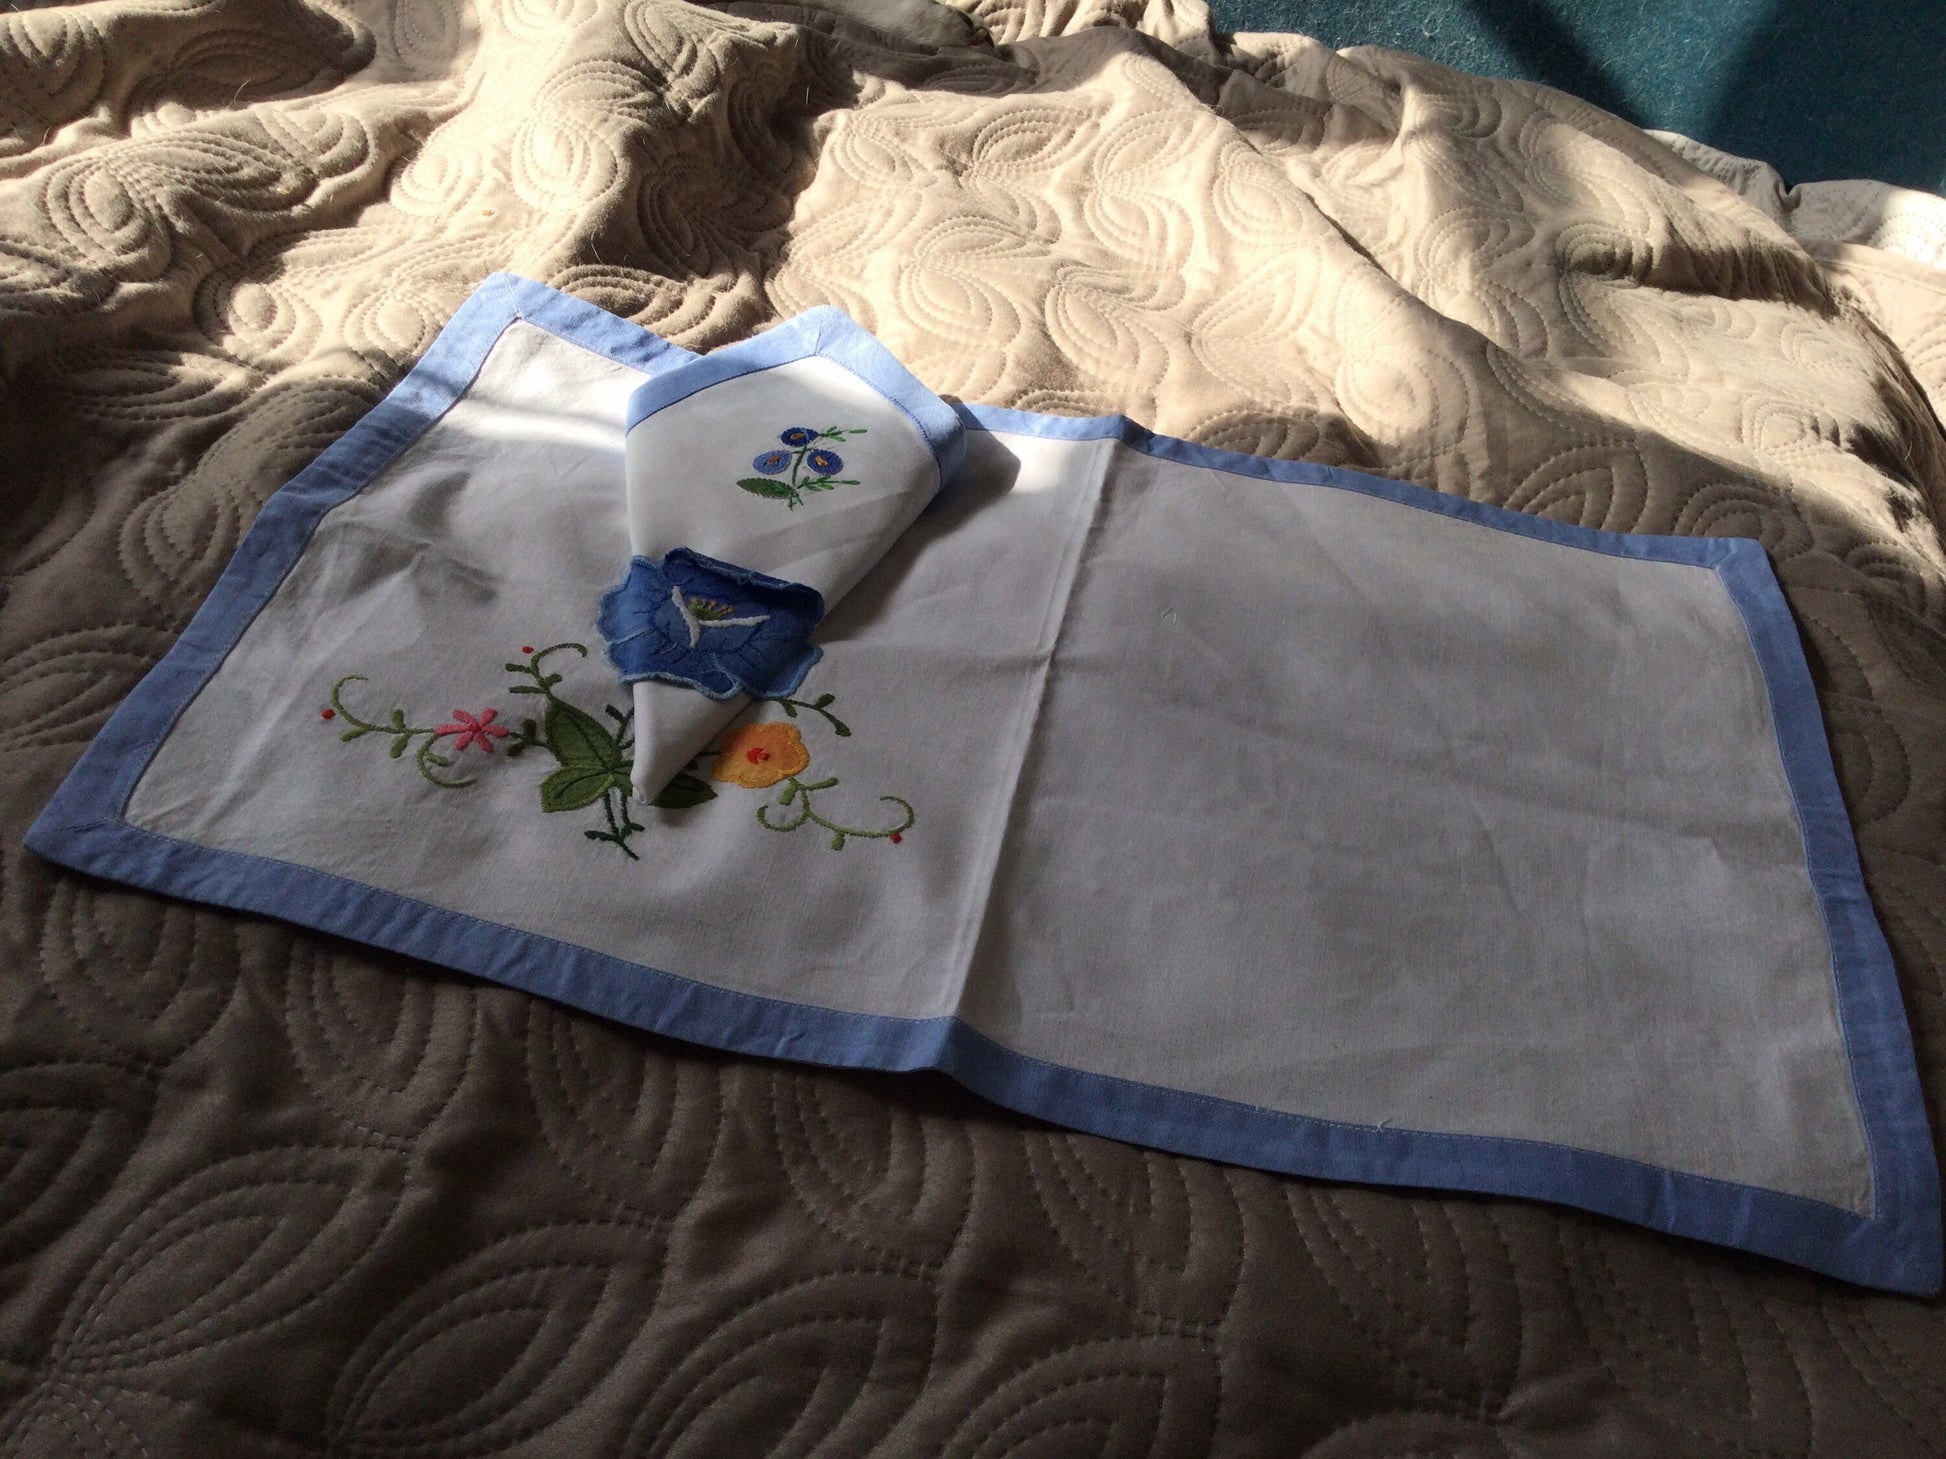 blue floral appliqué placemat with integral napkin serviette white cotton for tea tray